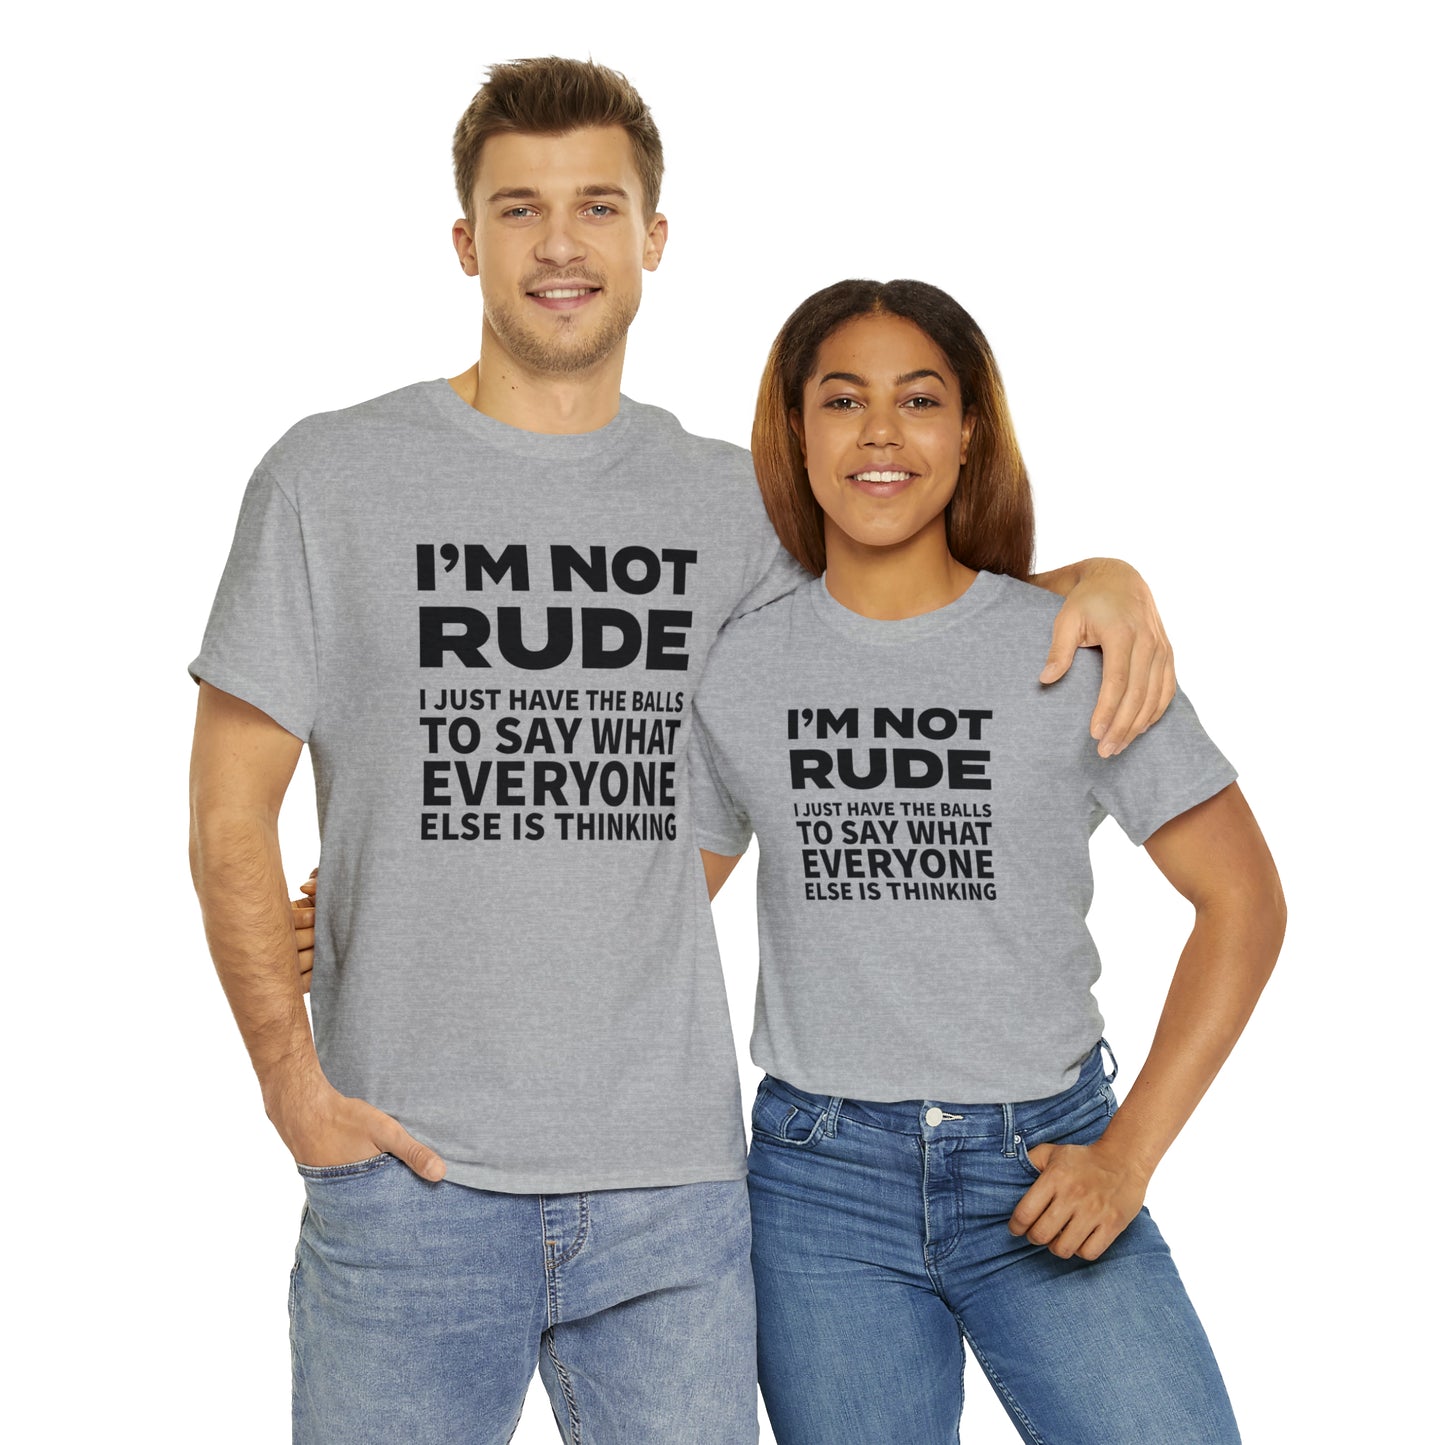 Not Rude T-Shirt For Ballsy TShirt For Speak Up T Shirt For Not Afraid T-Shirt For Conservative Shirt